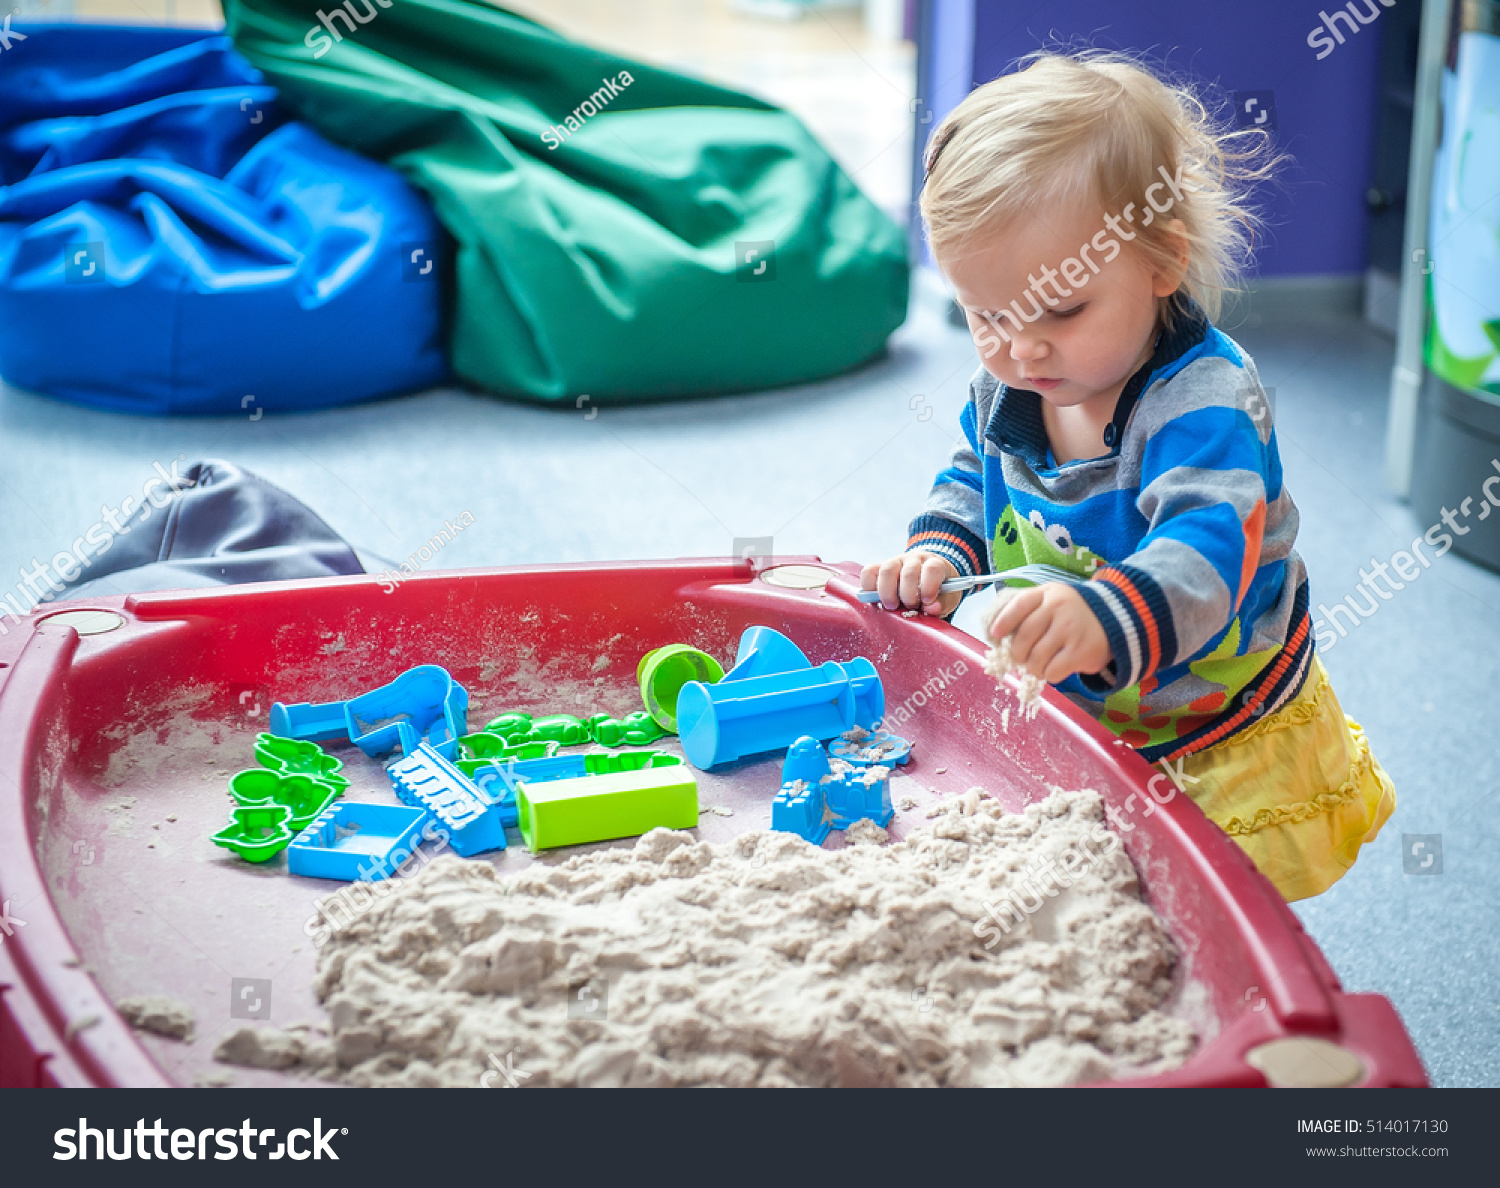 kinetic sand play table